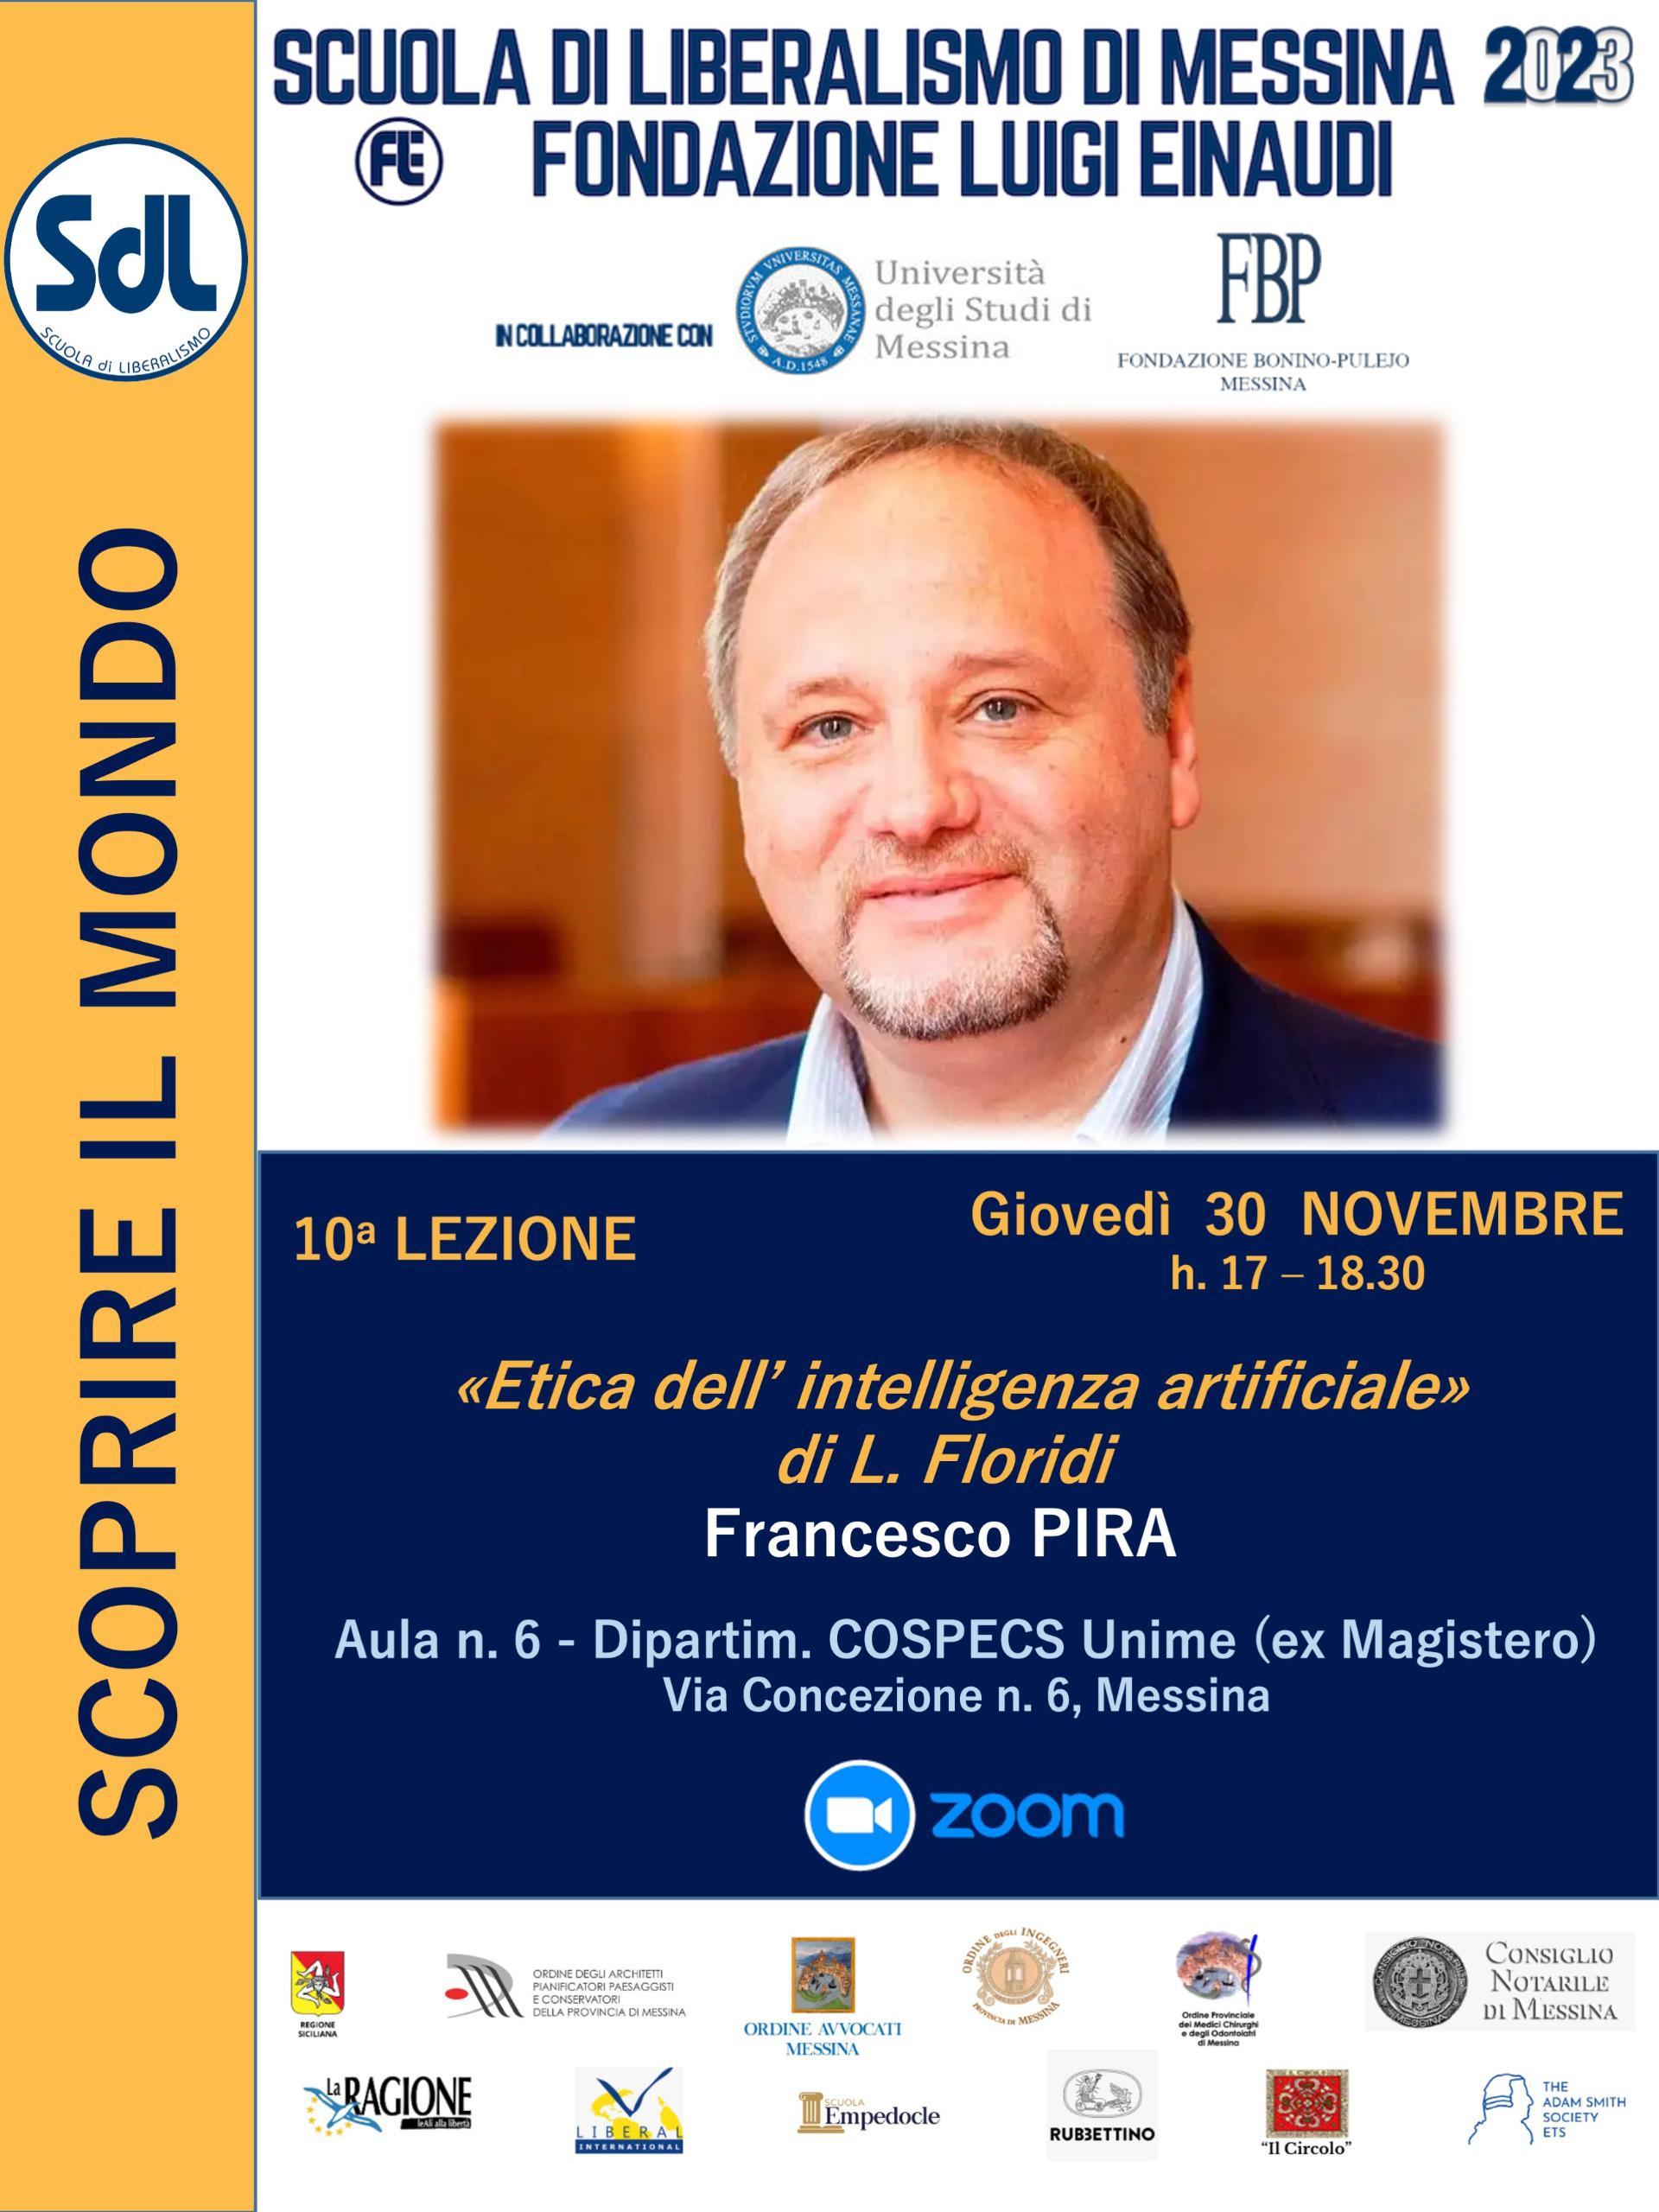 Scuola di Liberalismo 2023 – Messina: lezione del prof. Francesco Pira sul tema “Etica dell’intelligenza artificiale”